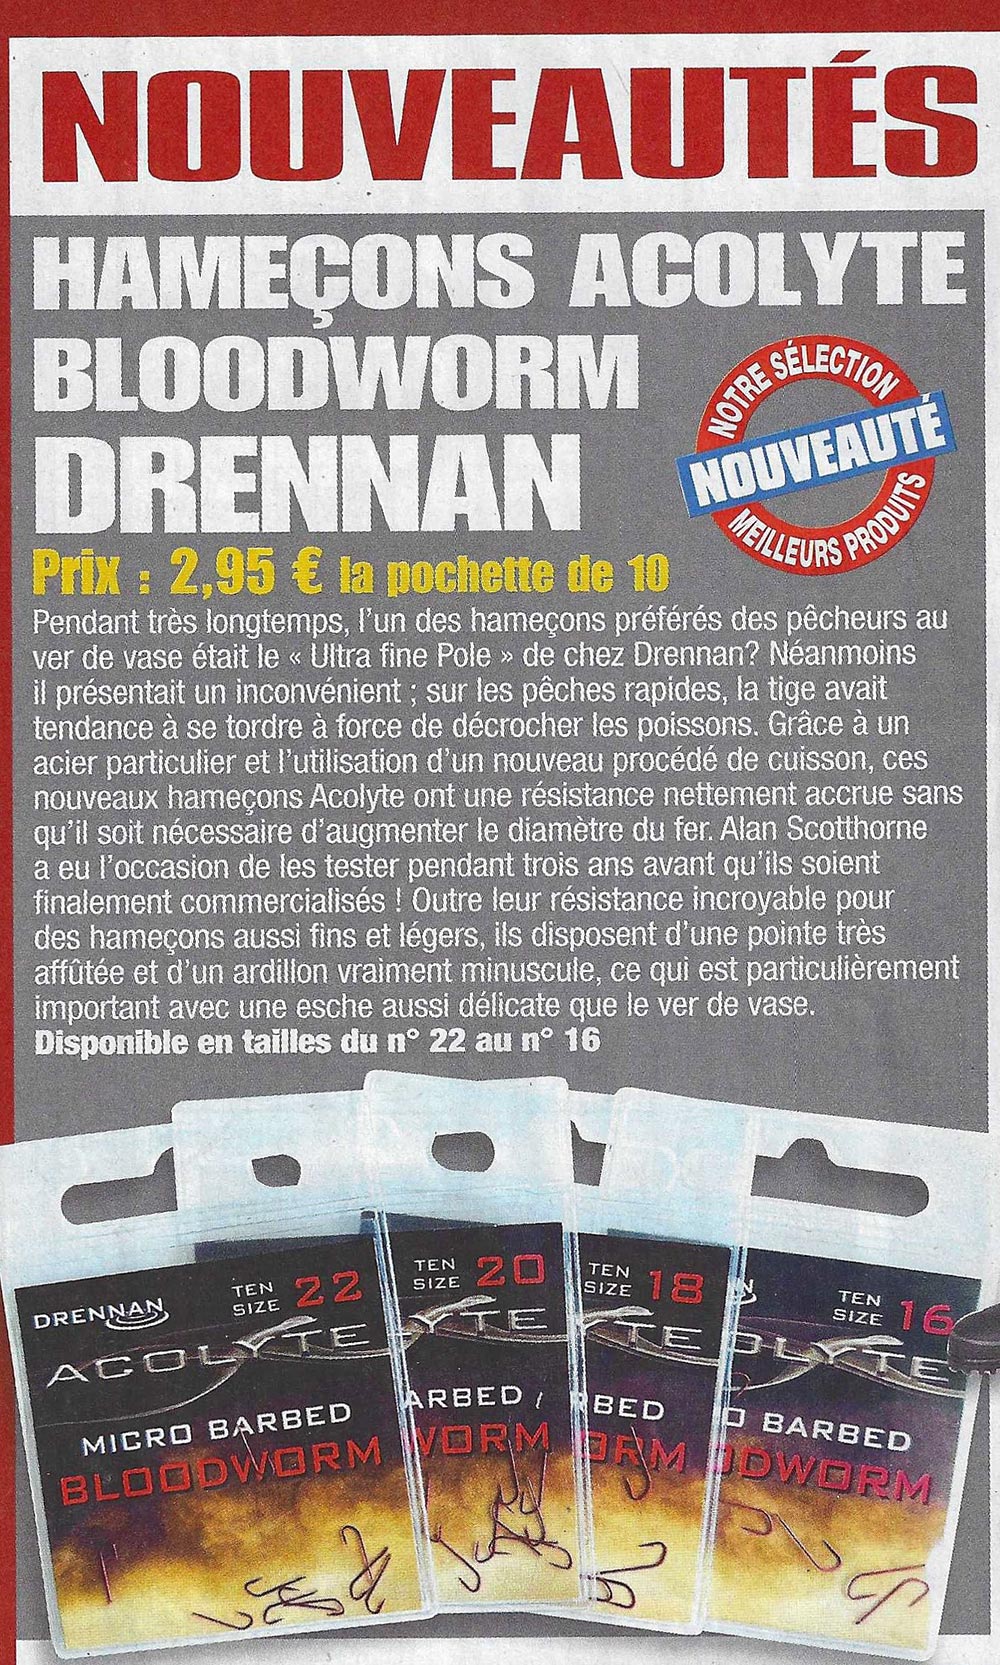 drennan acolyte bloodworm